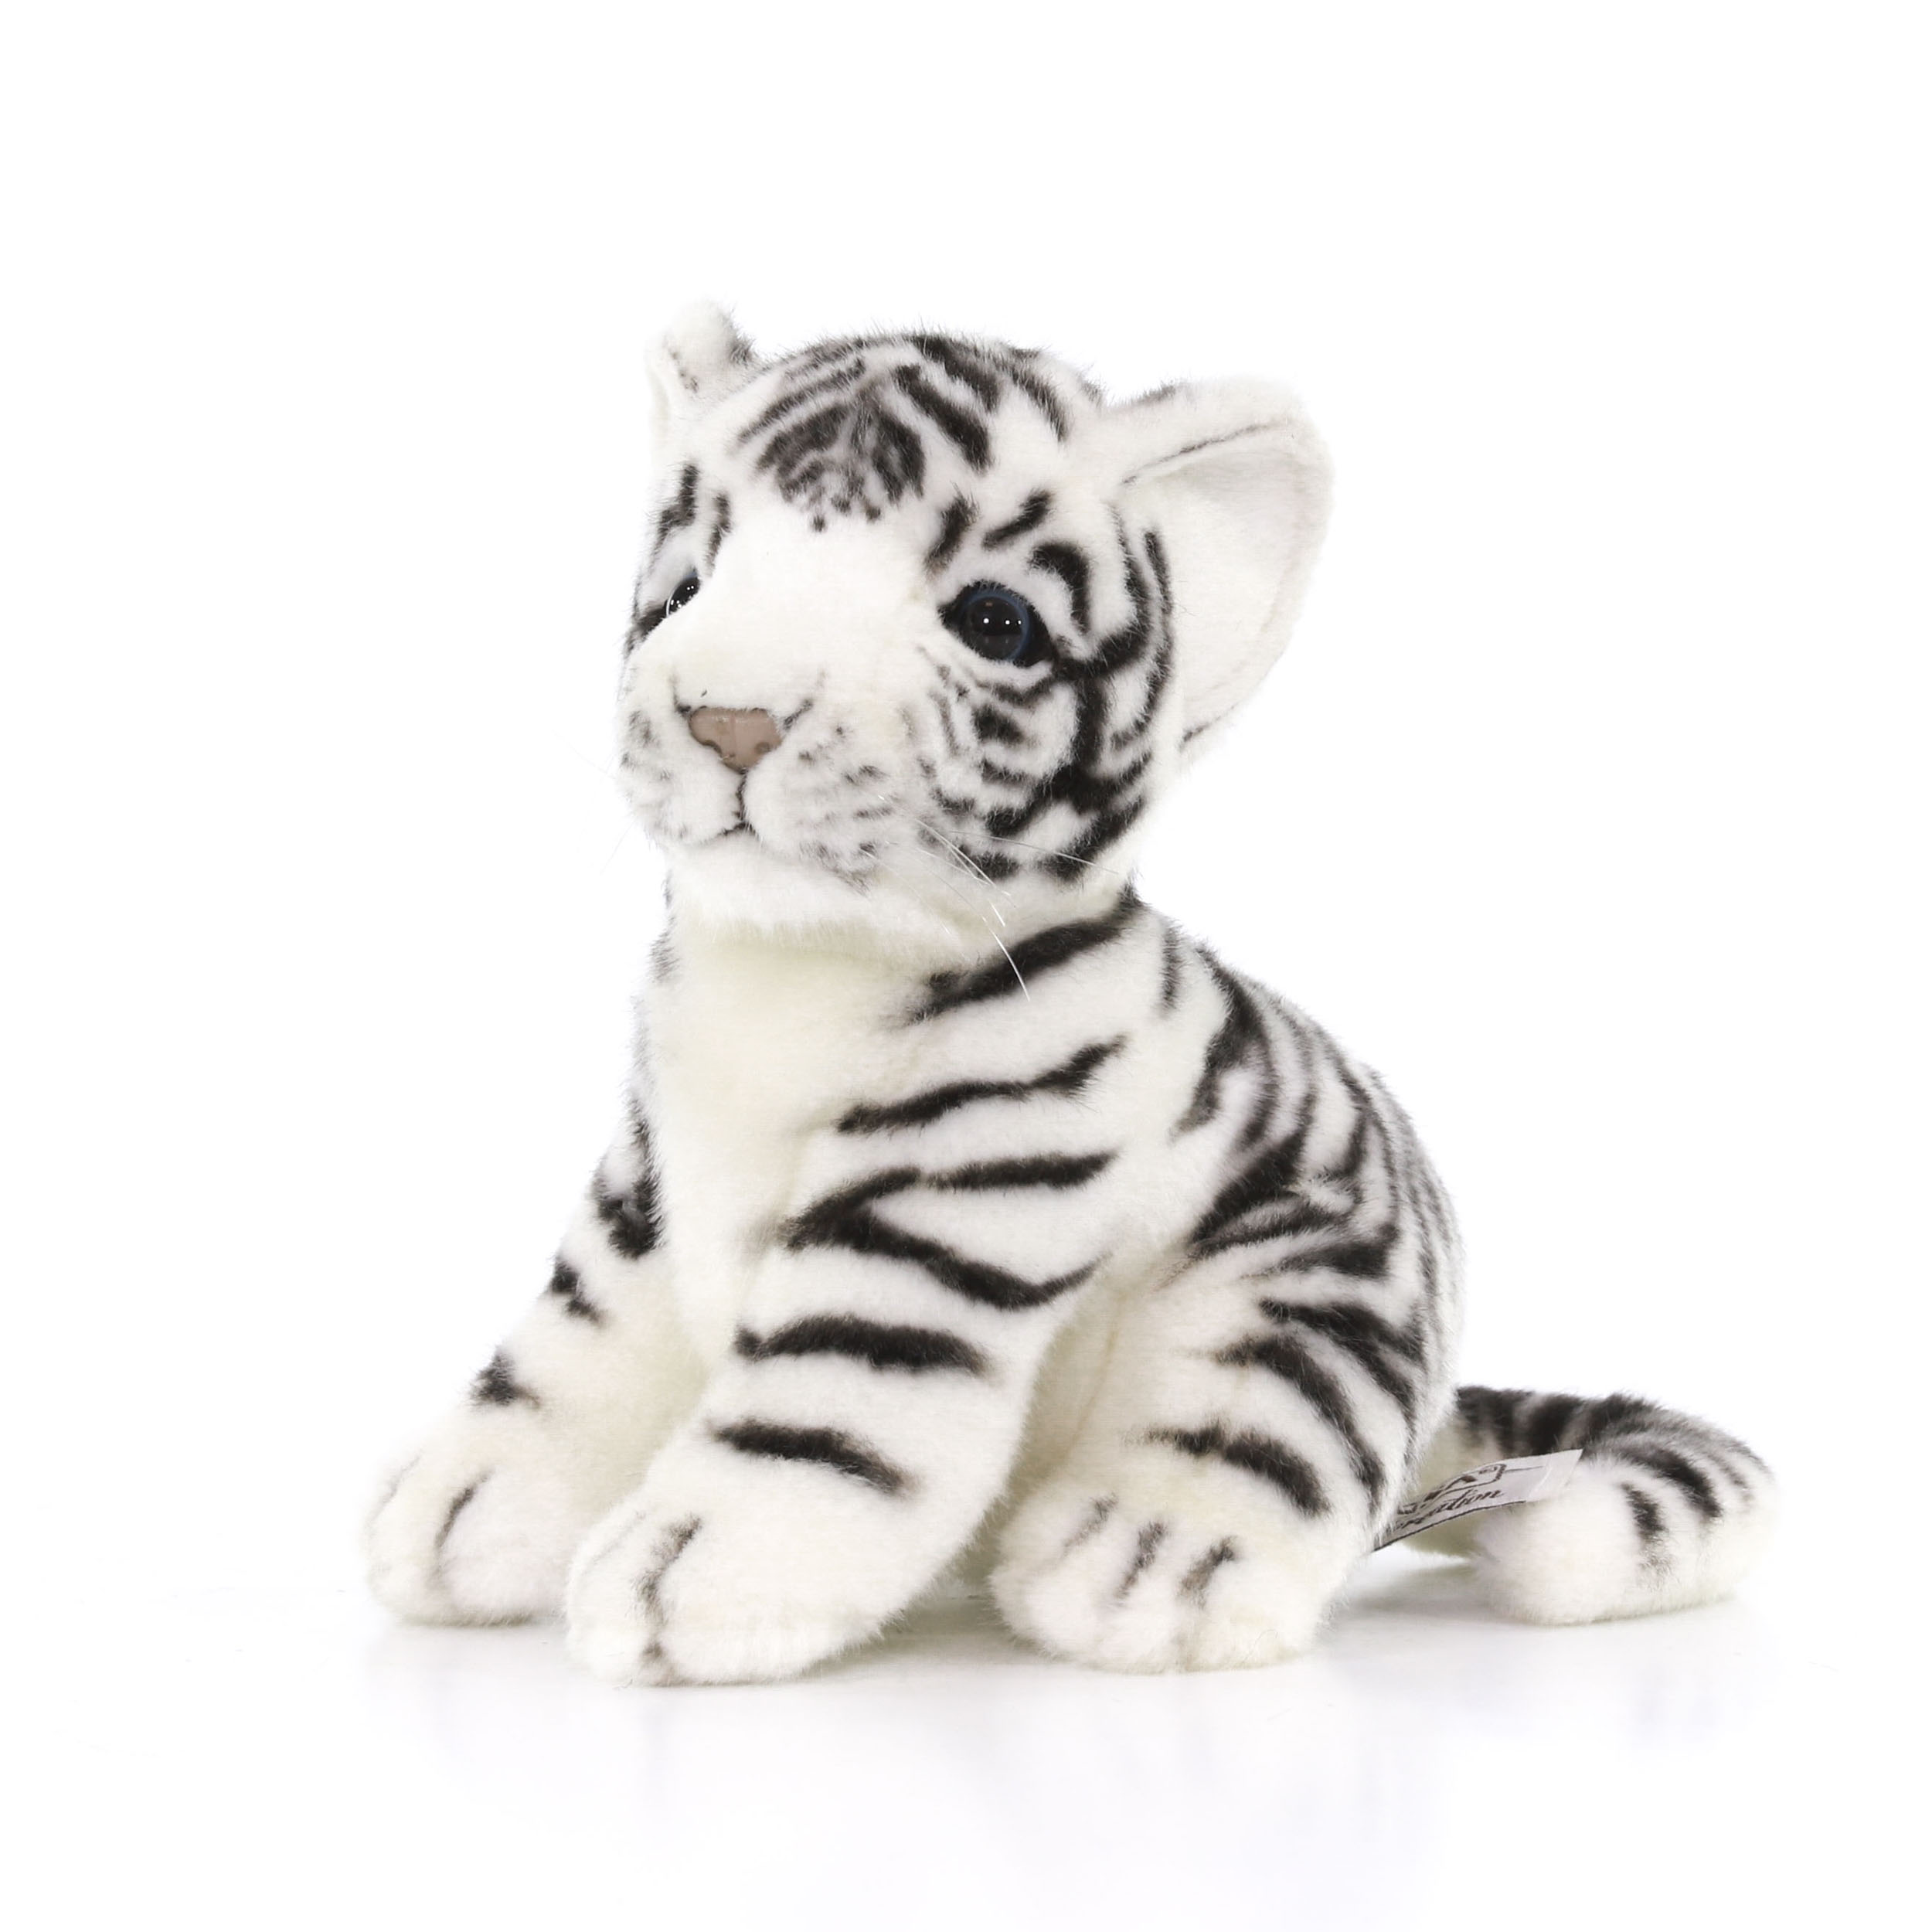 Реалистичная мягкая игрушка Hansa Creation Тигренок белый, 18 см реалистичная мягкая игрушка hansa creation персидский кот табби рыже белый 45см